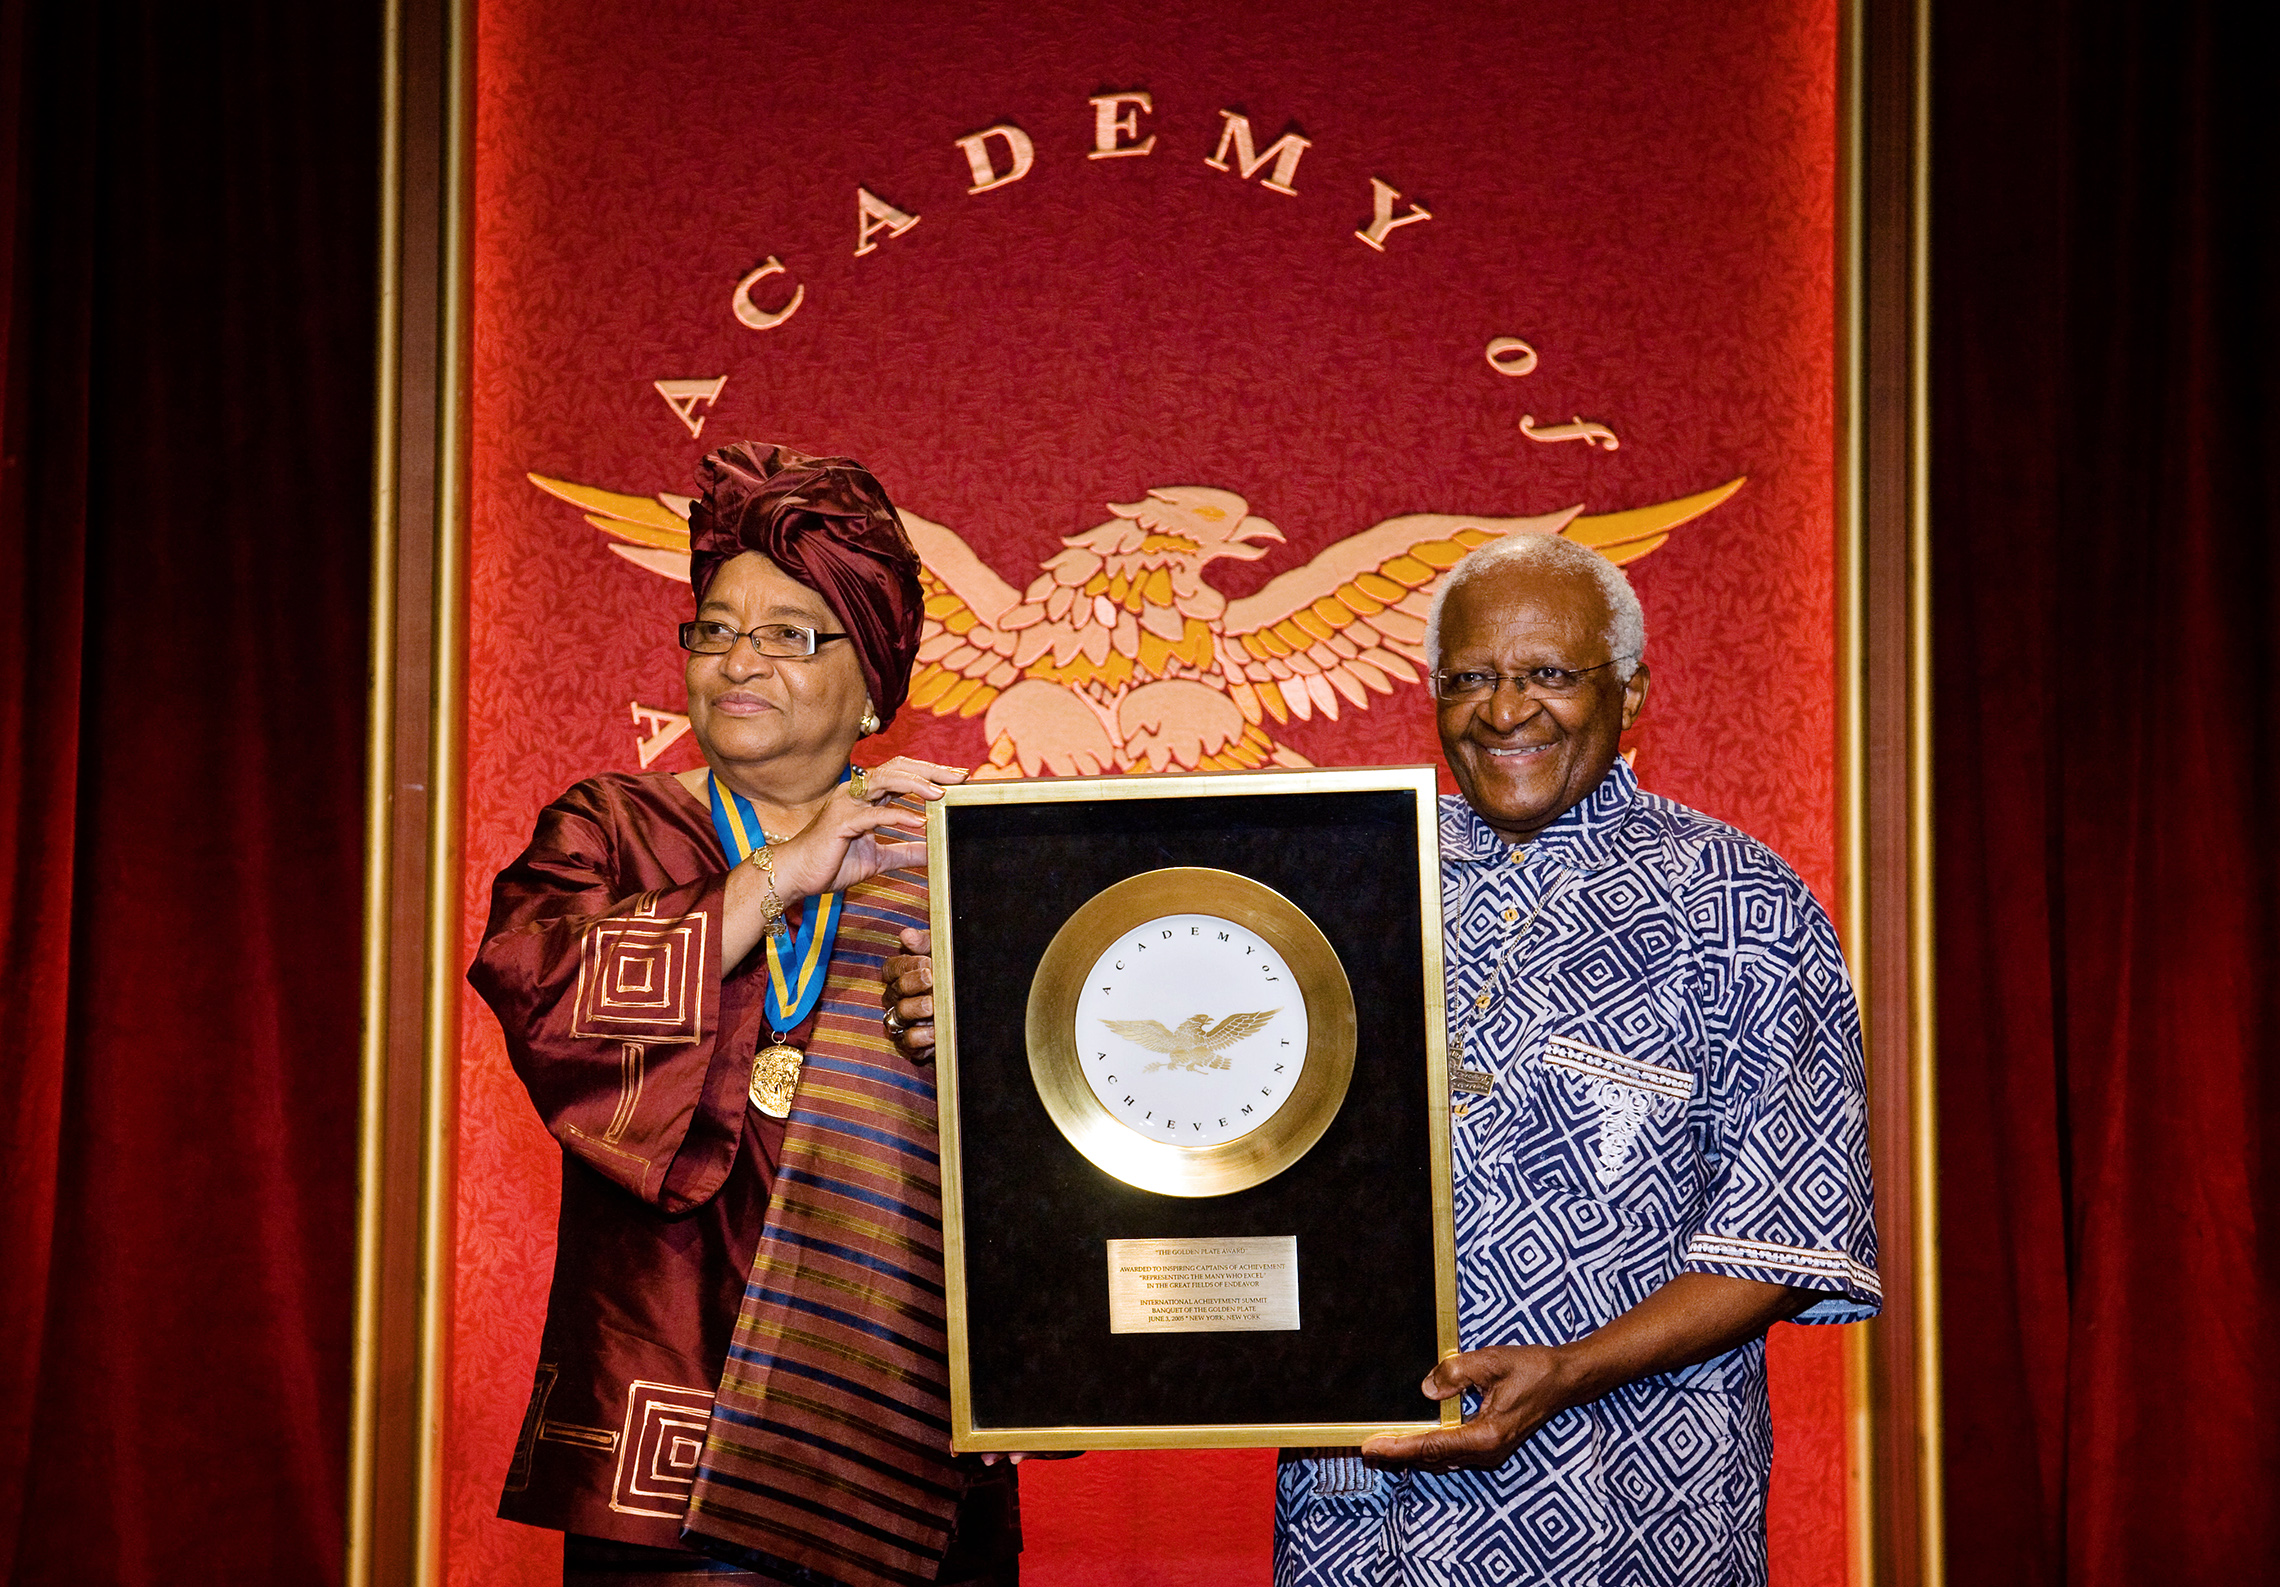 ærkebiskop Emeritus Desmond Tutu fra Sydafrika uddeler Golden Plate-prisen til Liberias præsident, Ellen Johnson Sirleaf, på det internationale Præstationstopmøde i 2008. Ærkebiskop Emeritus Desmond Tutu i Sydafrika uddeler den gyldne plade til Liberias præsident, Ellen Johnson Sirleaf, ved Det Internationale Achievement-topmøde i 2008. (Præstationsakademiet)